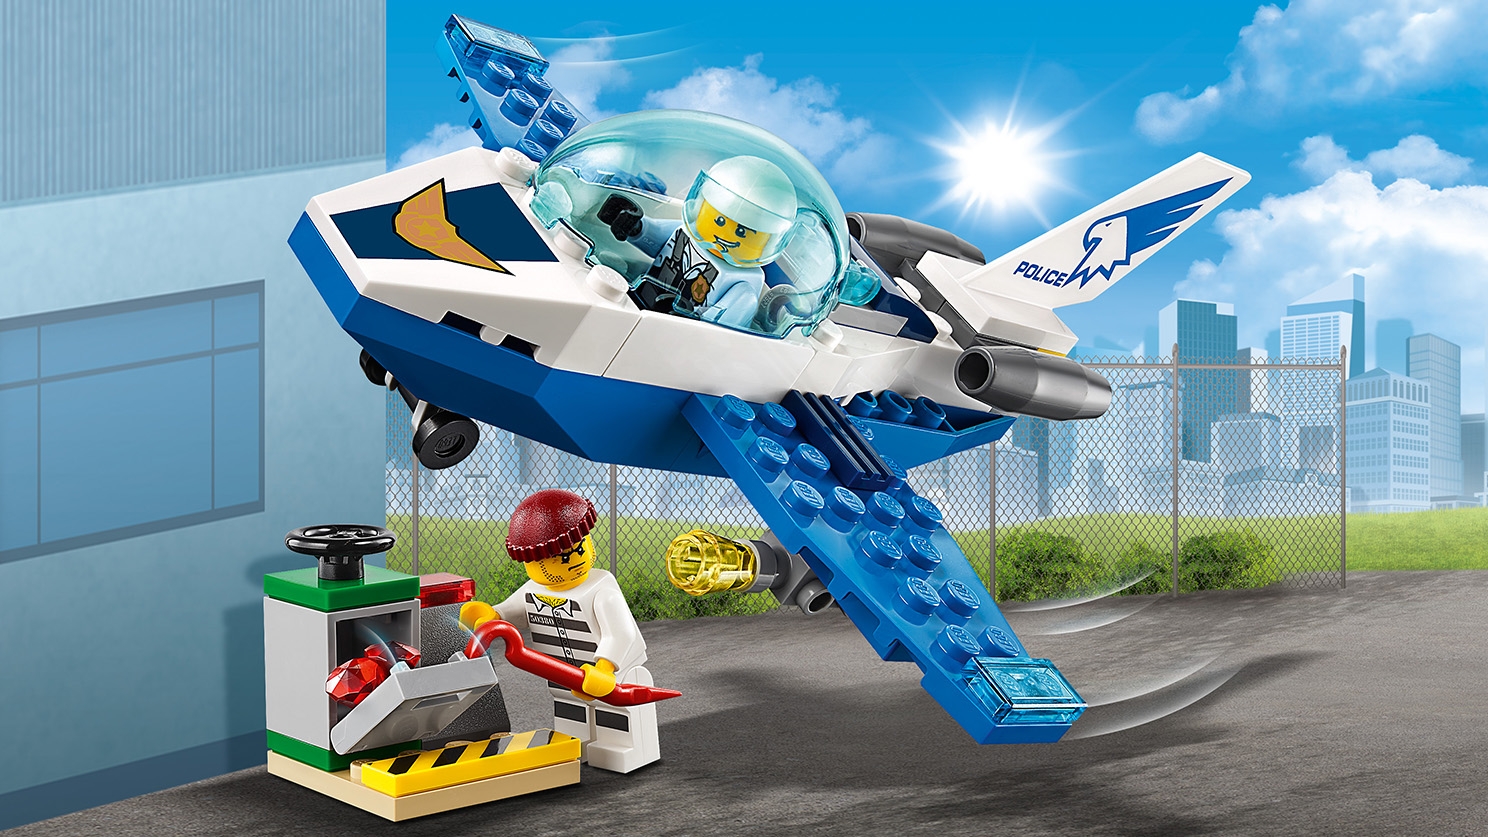 Sky Police Jet Patrol 60206 - LEGO® City Sets - LEGO.com for kids